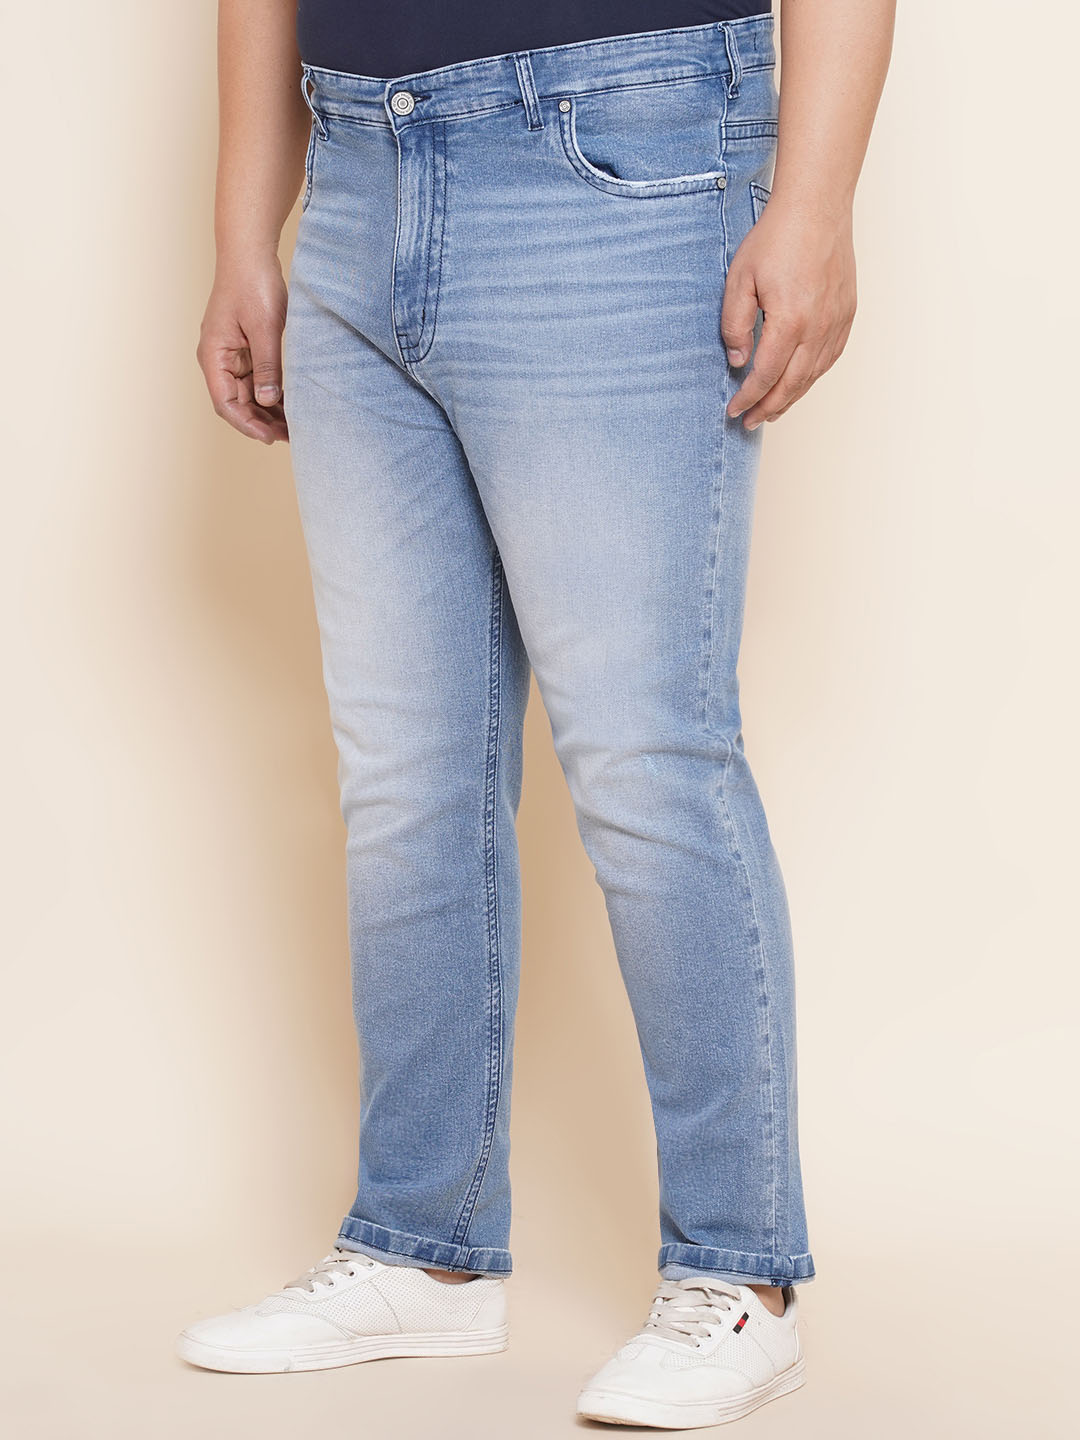 bottomwear/jeans/JPJ27018/jpj27018-4.jpg